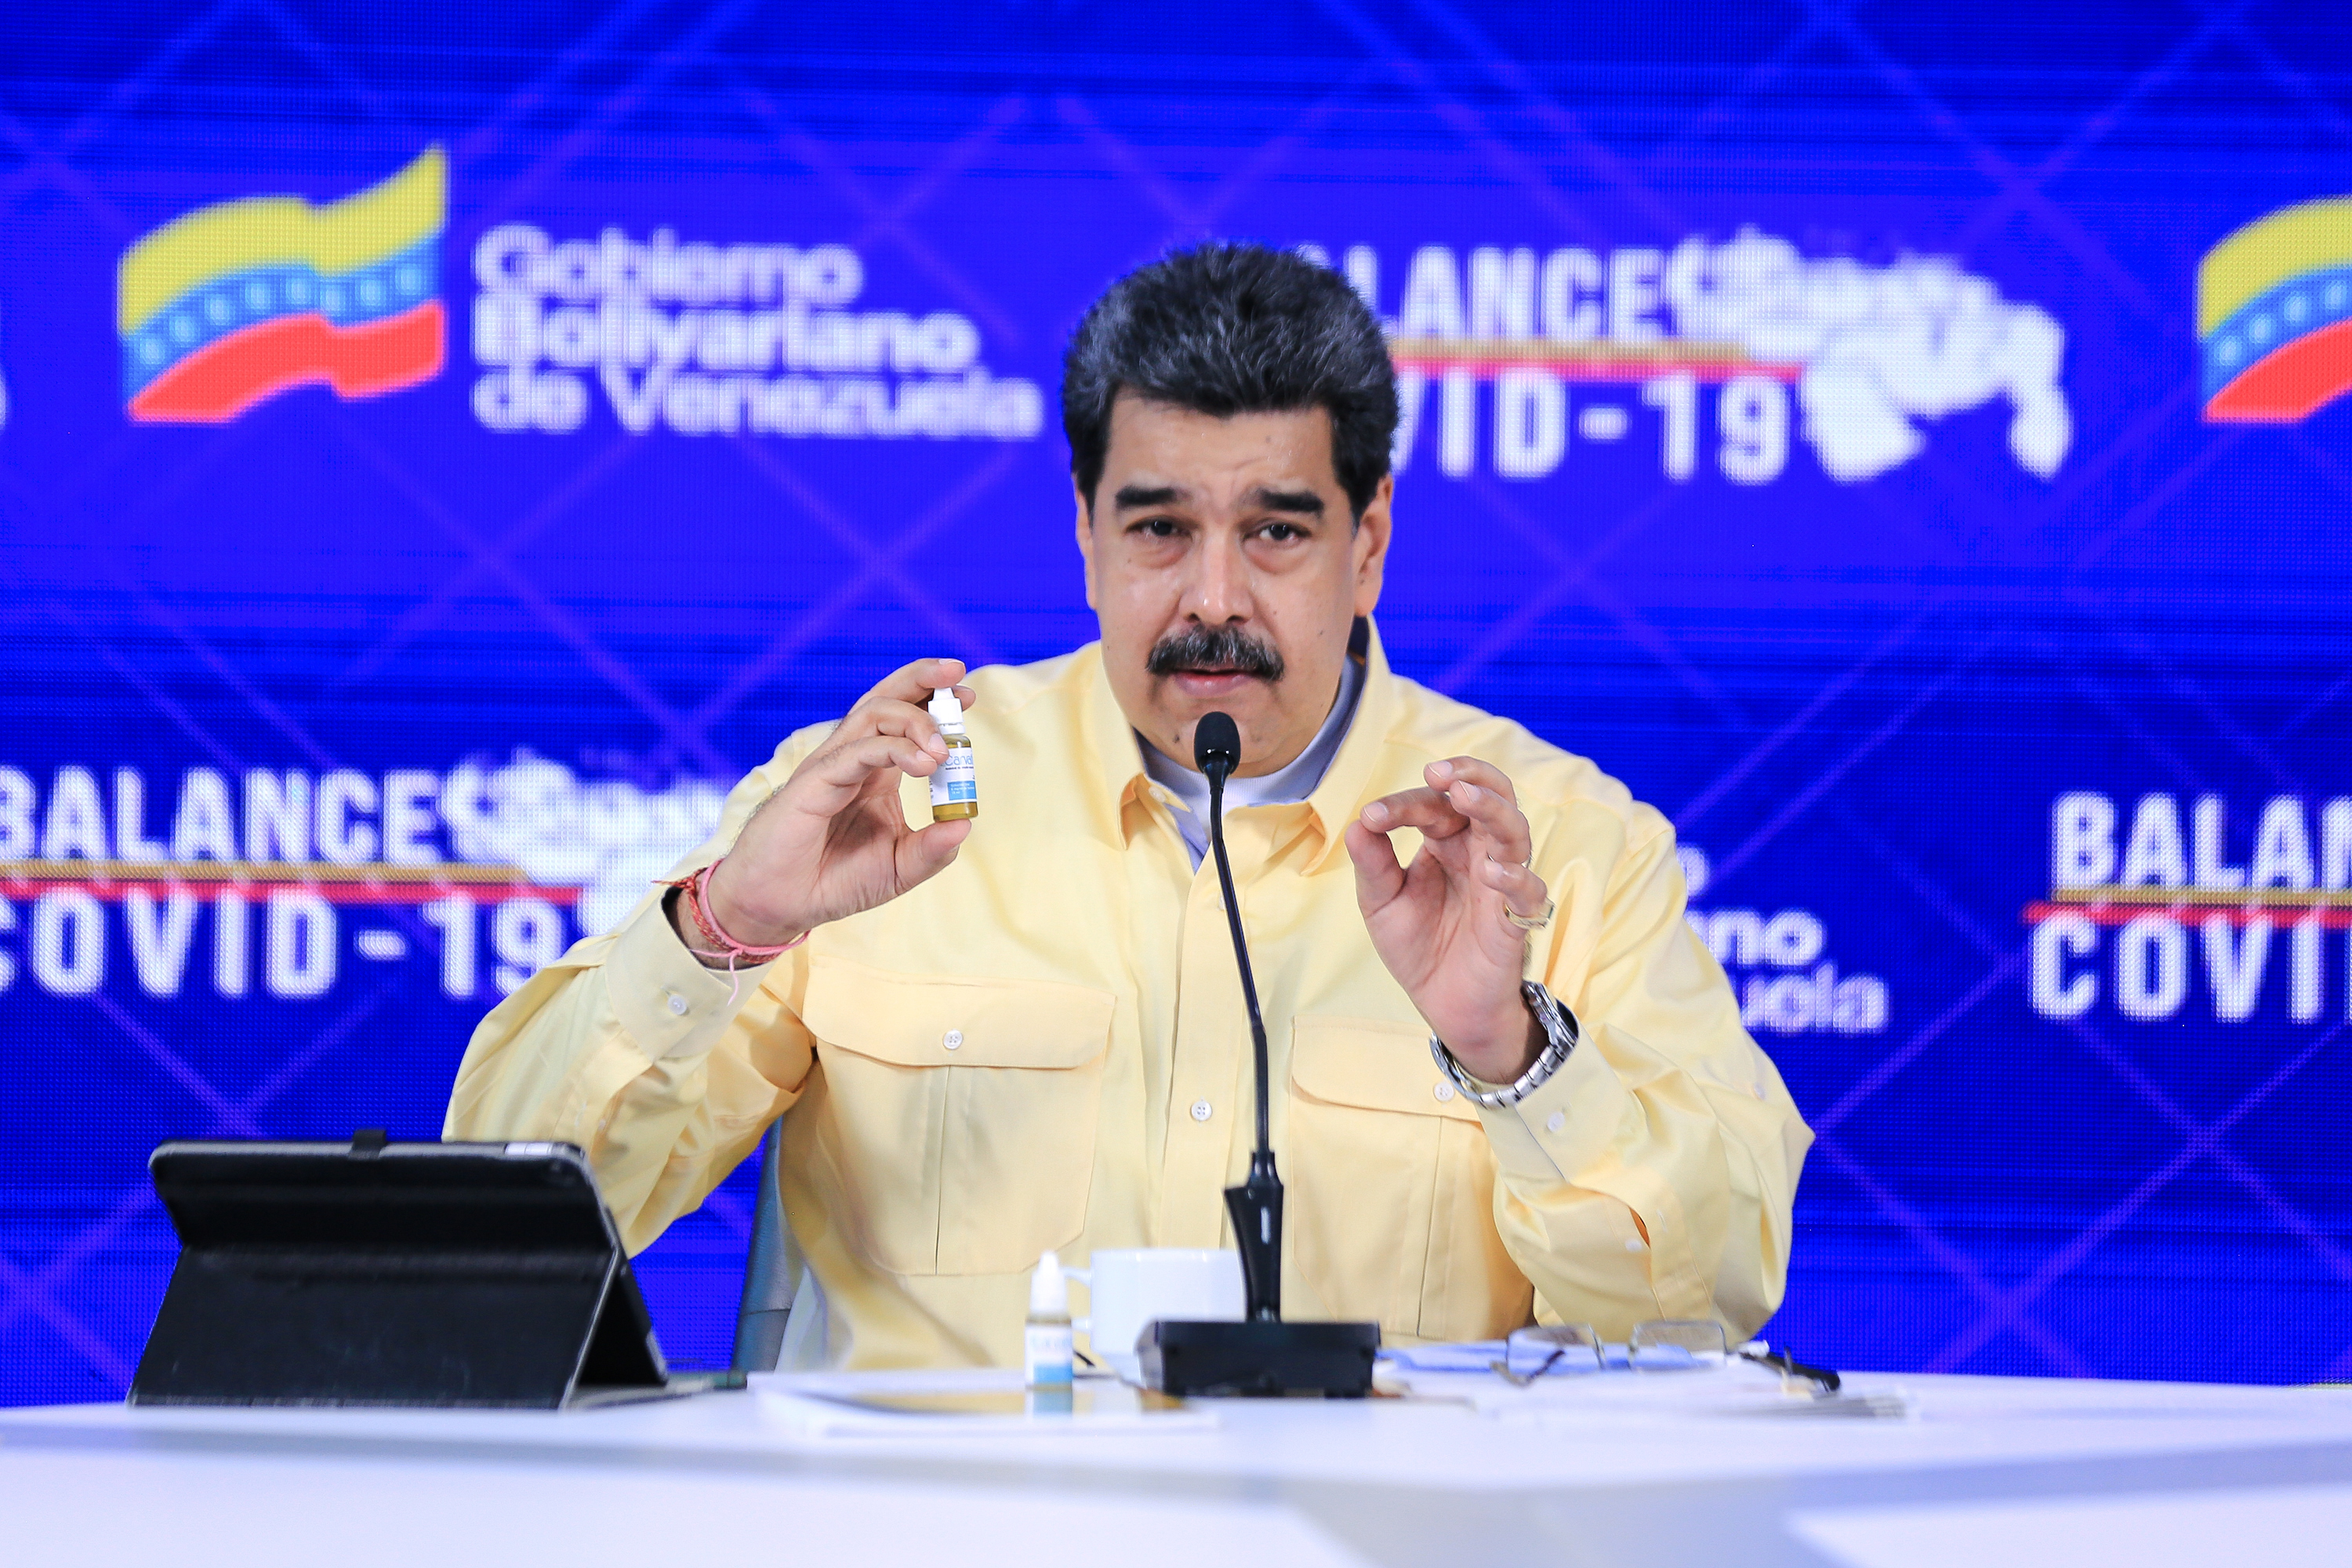 La mentira del carvativir, las “gotitas milagrosas” de Nicolás Maduro contra el coronavirus